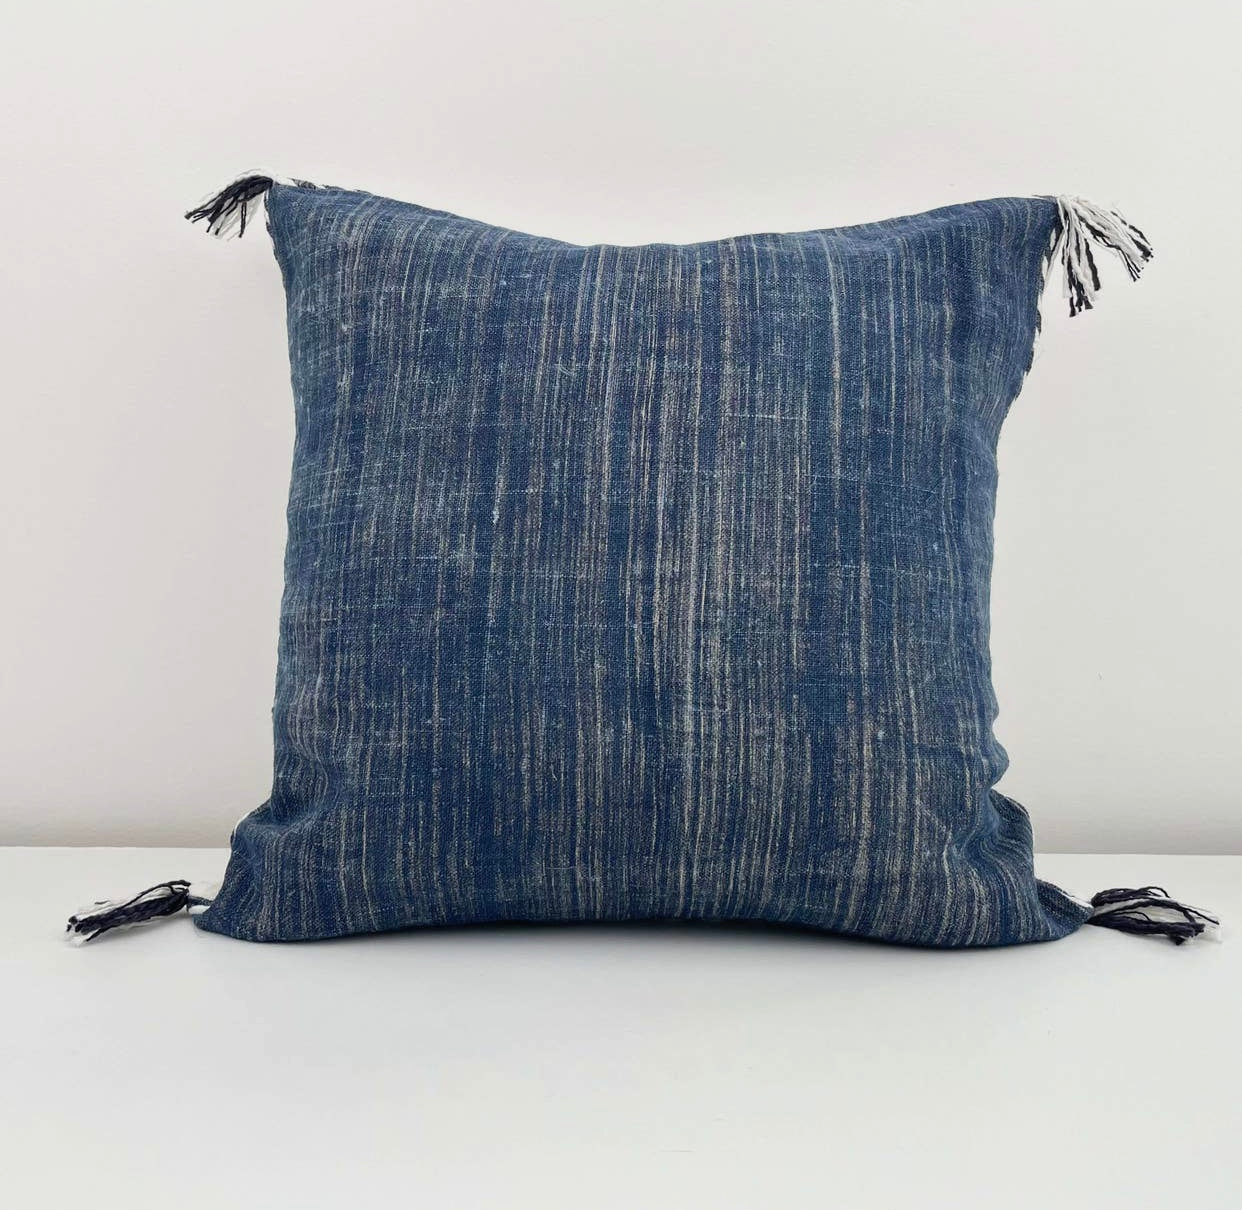 Hand Woven Linen Pillow, Indigo